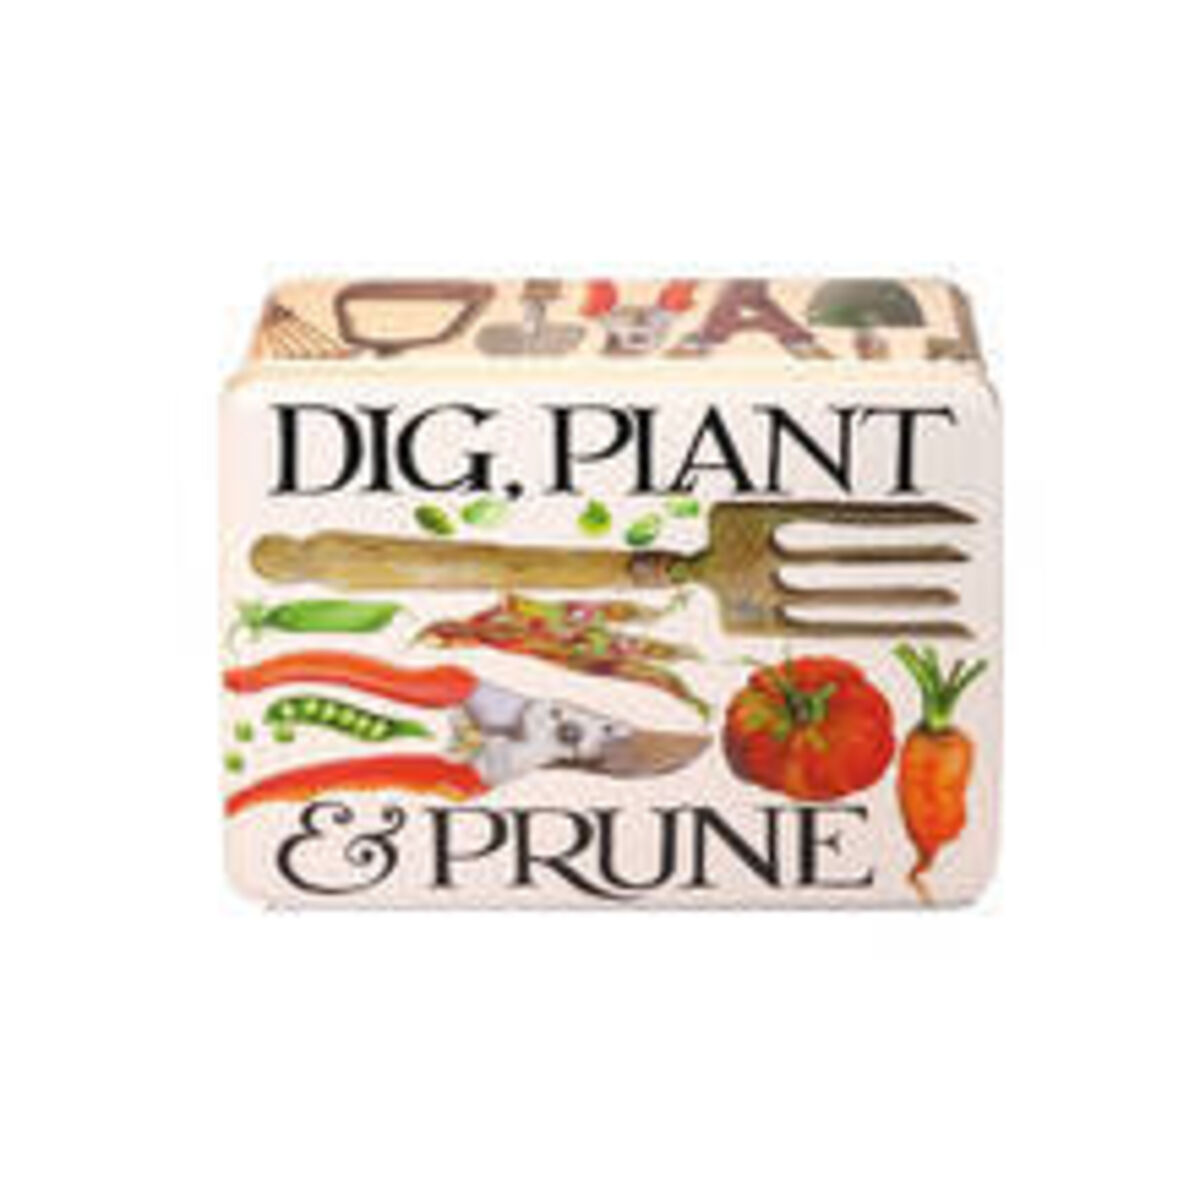 Dig, Plant Prune.jpg